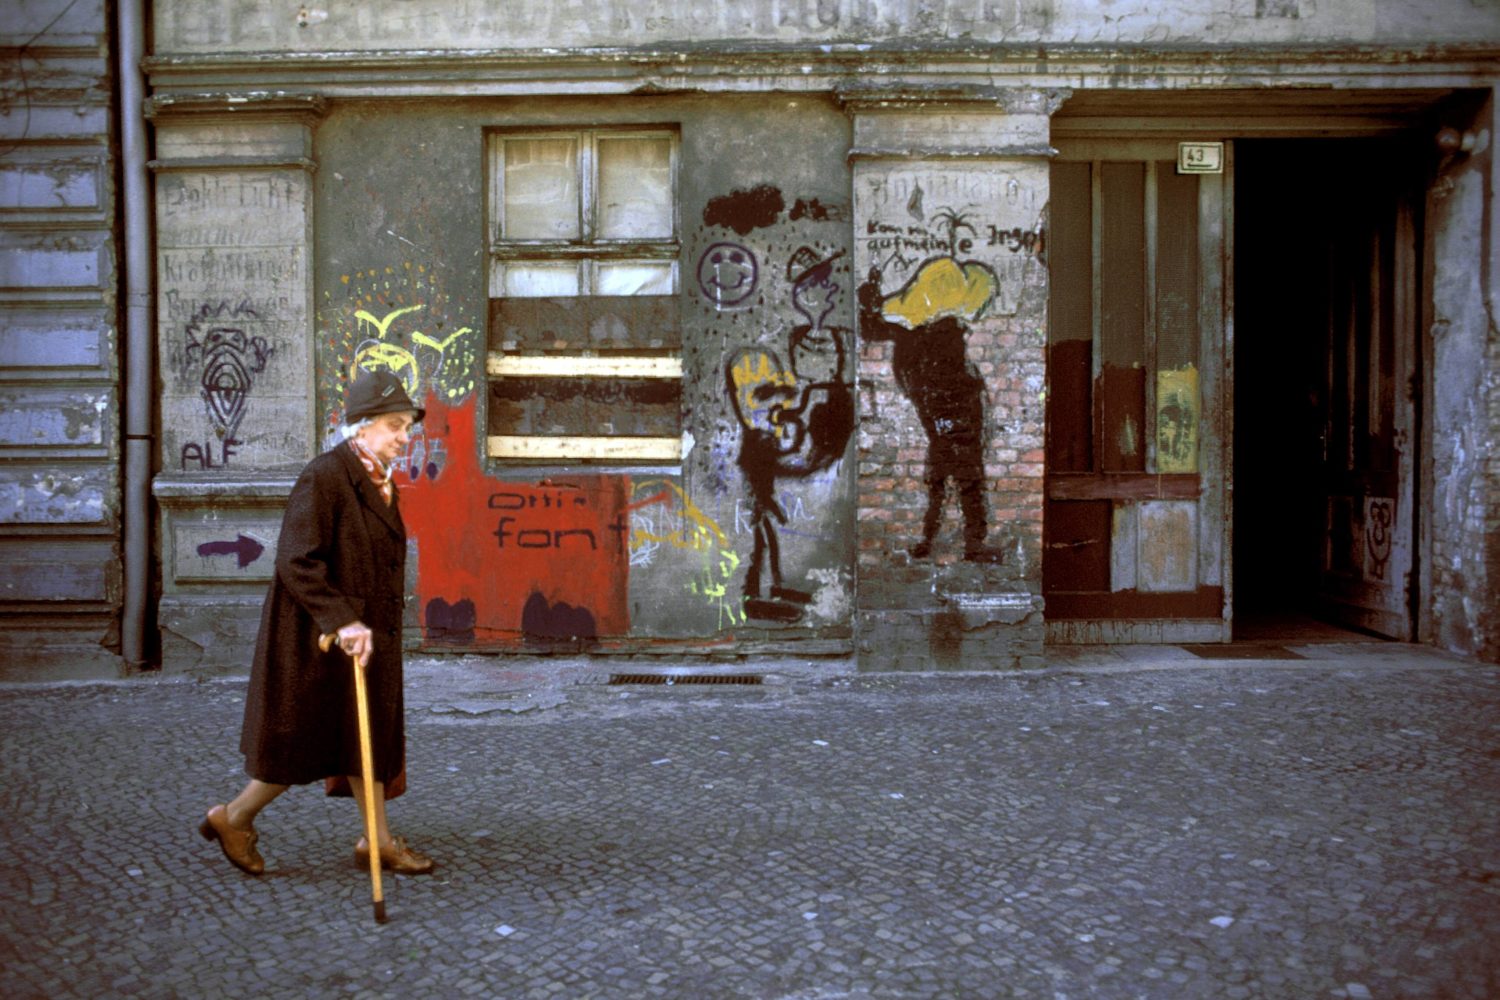 Rentnerin in der Rykestraße in Prenzlauer Berg, frühe 1990er-Jahre. Foto: Imago/Dieter Matthes